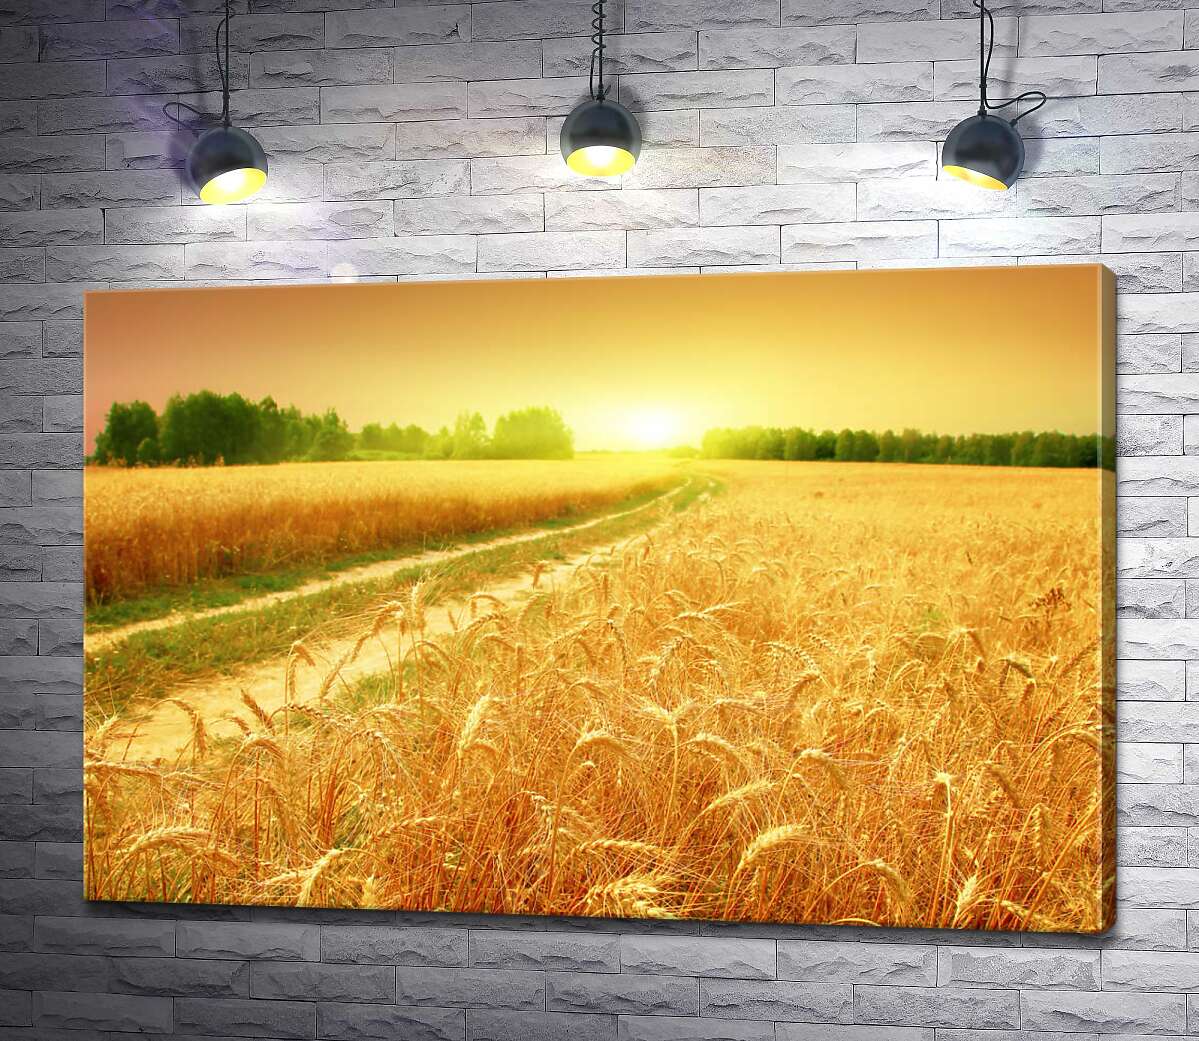 картина Польова дорога зеленою стрічкою проходить між жовтого колосся пшениці